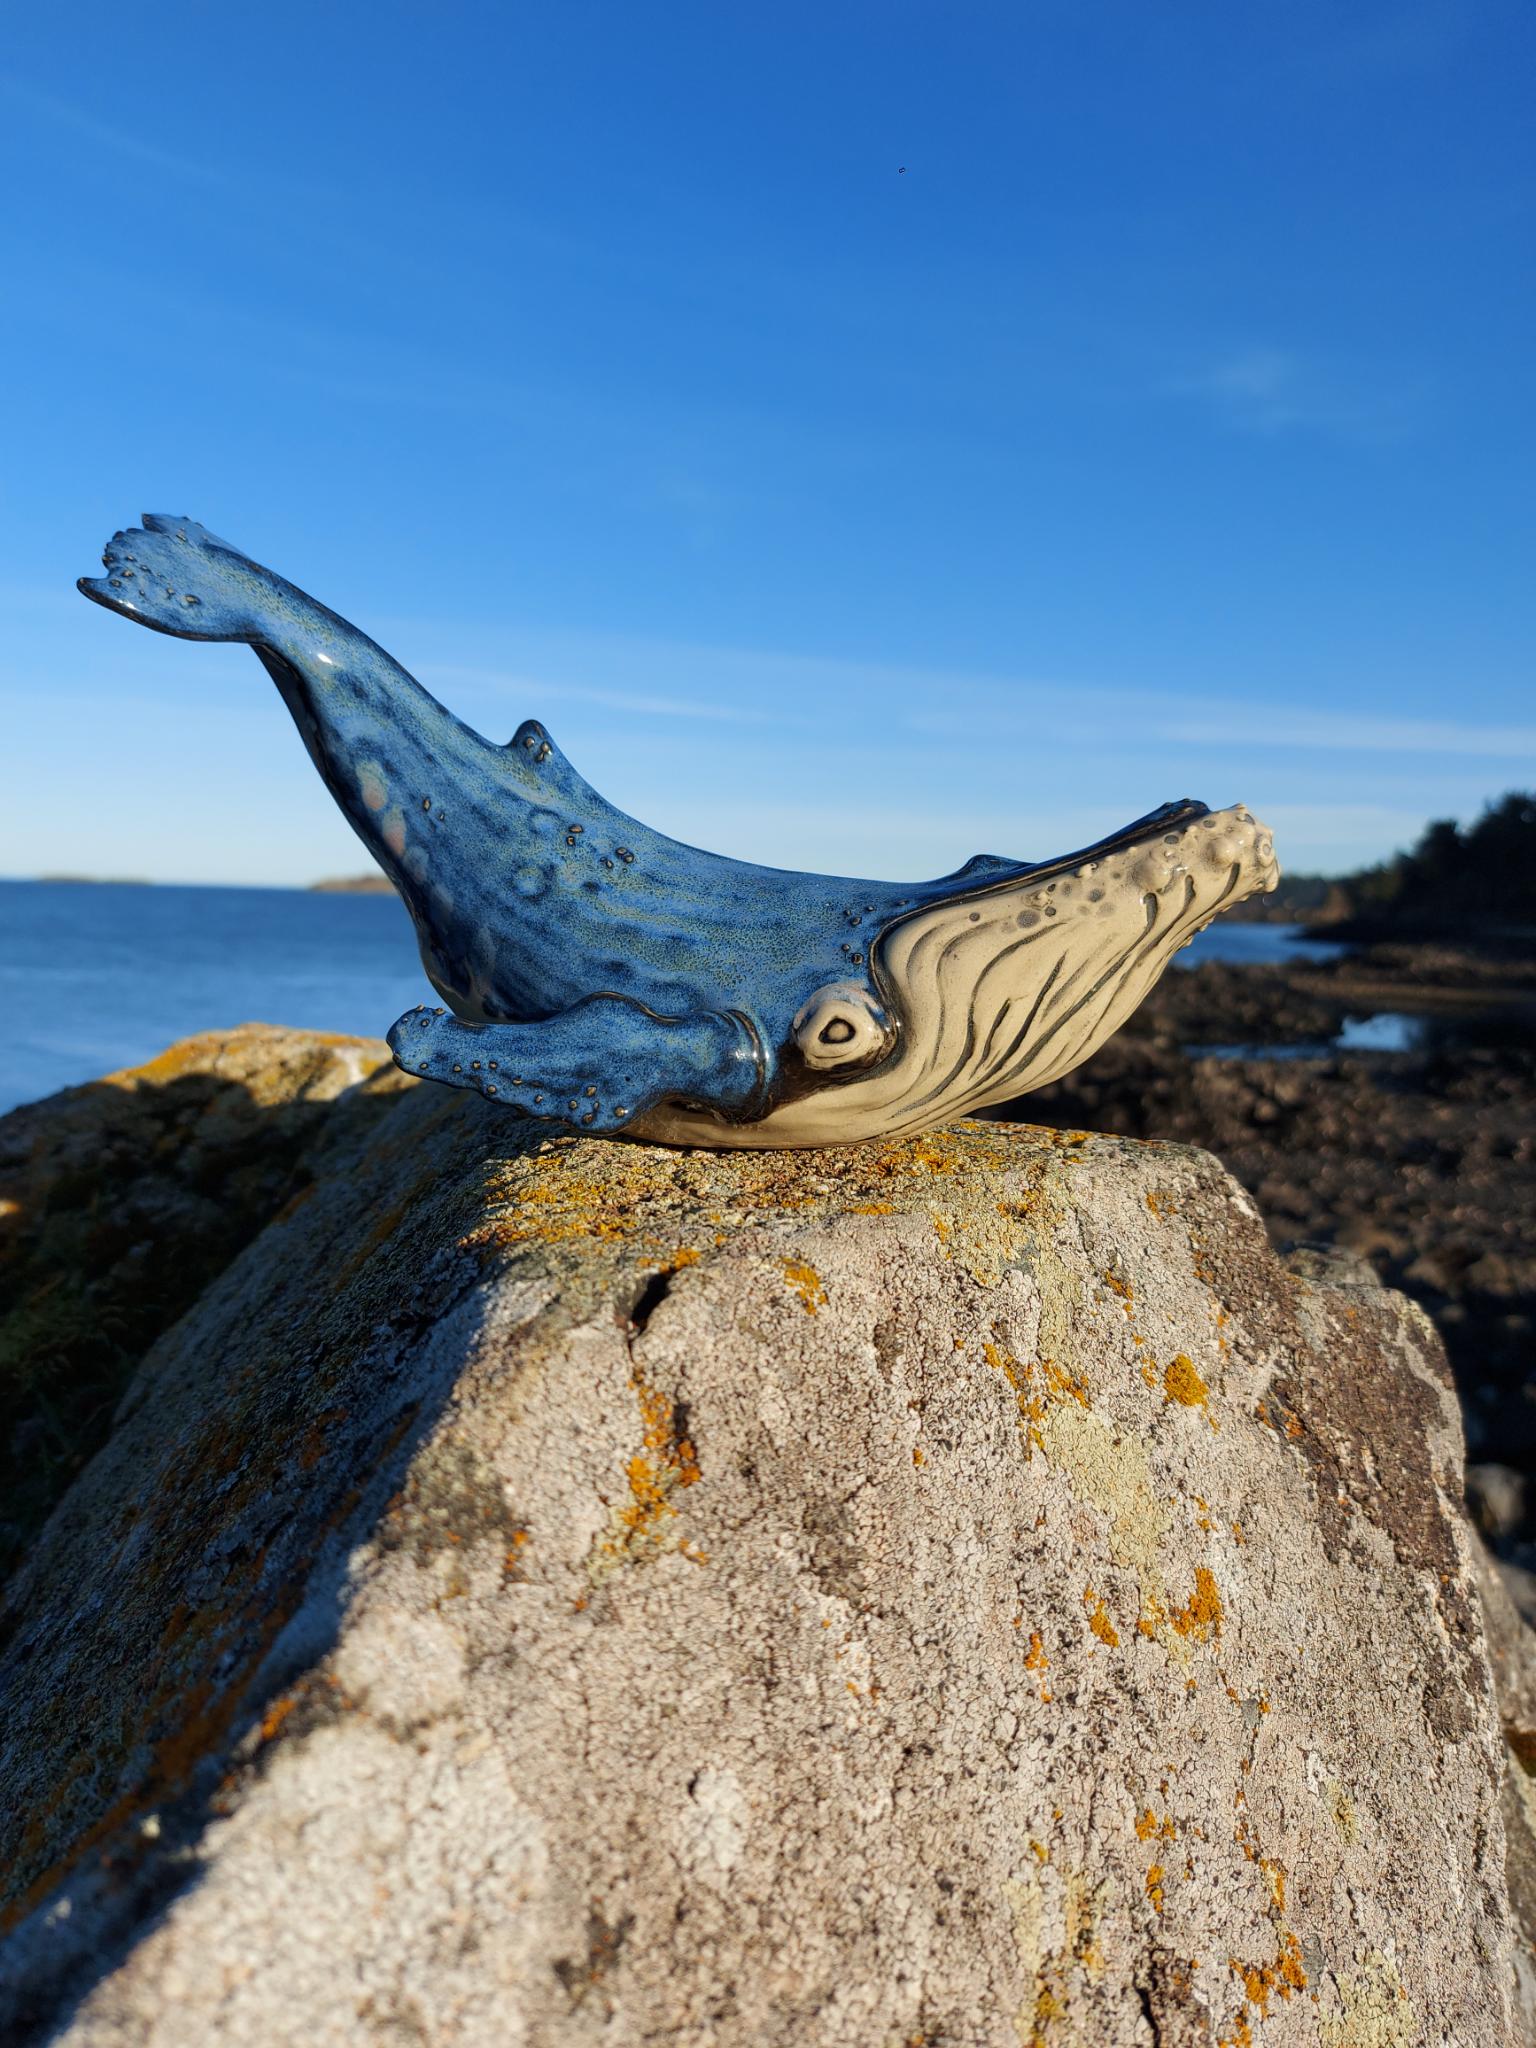 Ceramic Whale Image